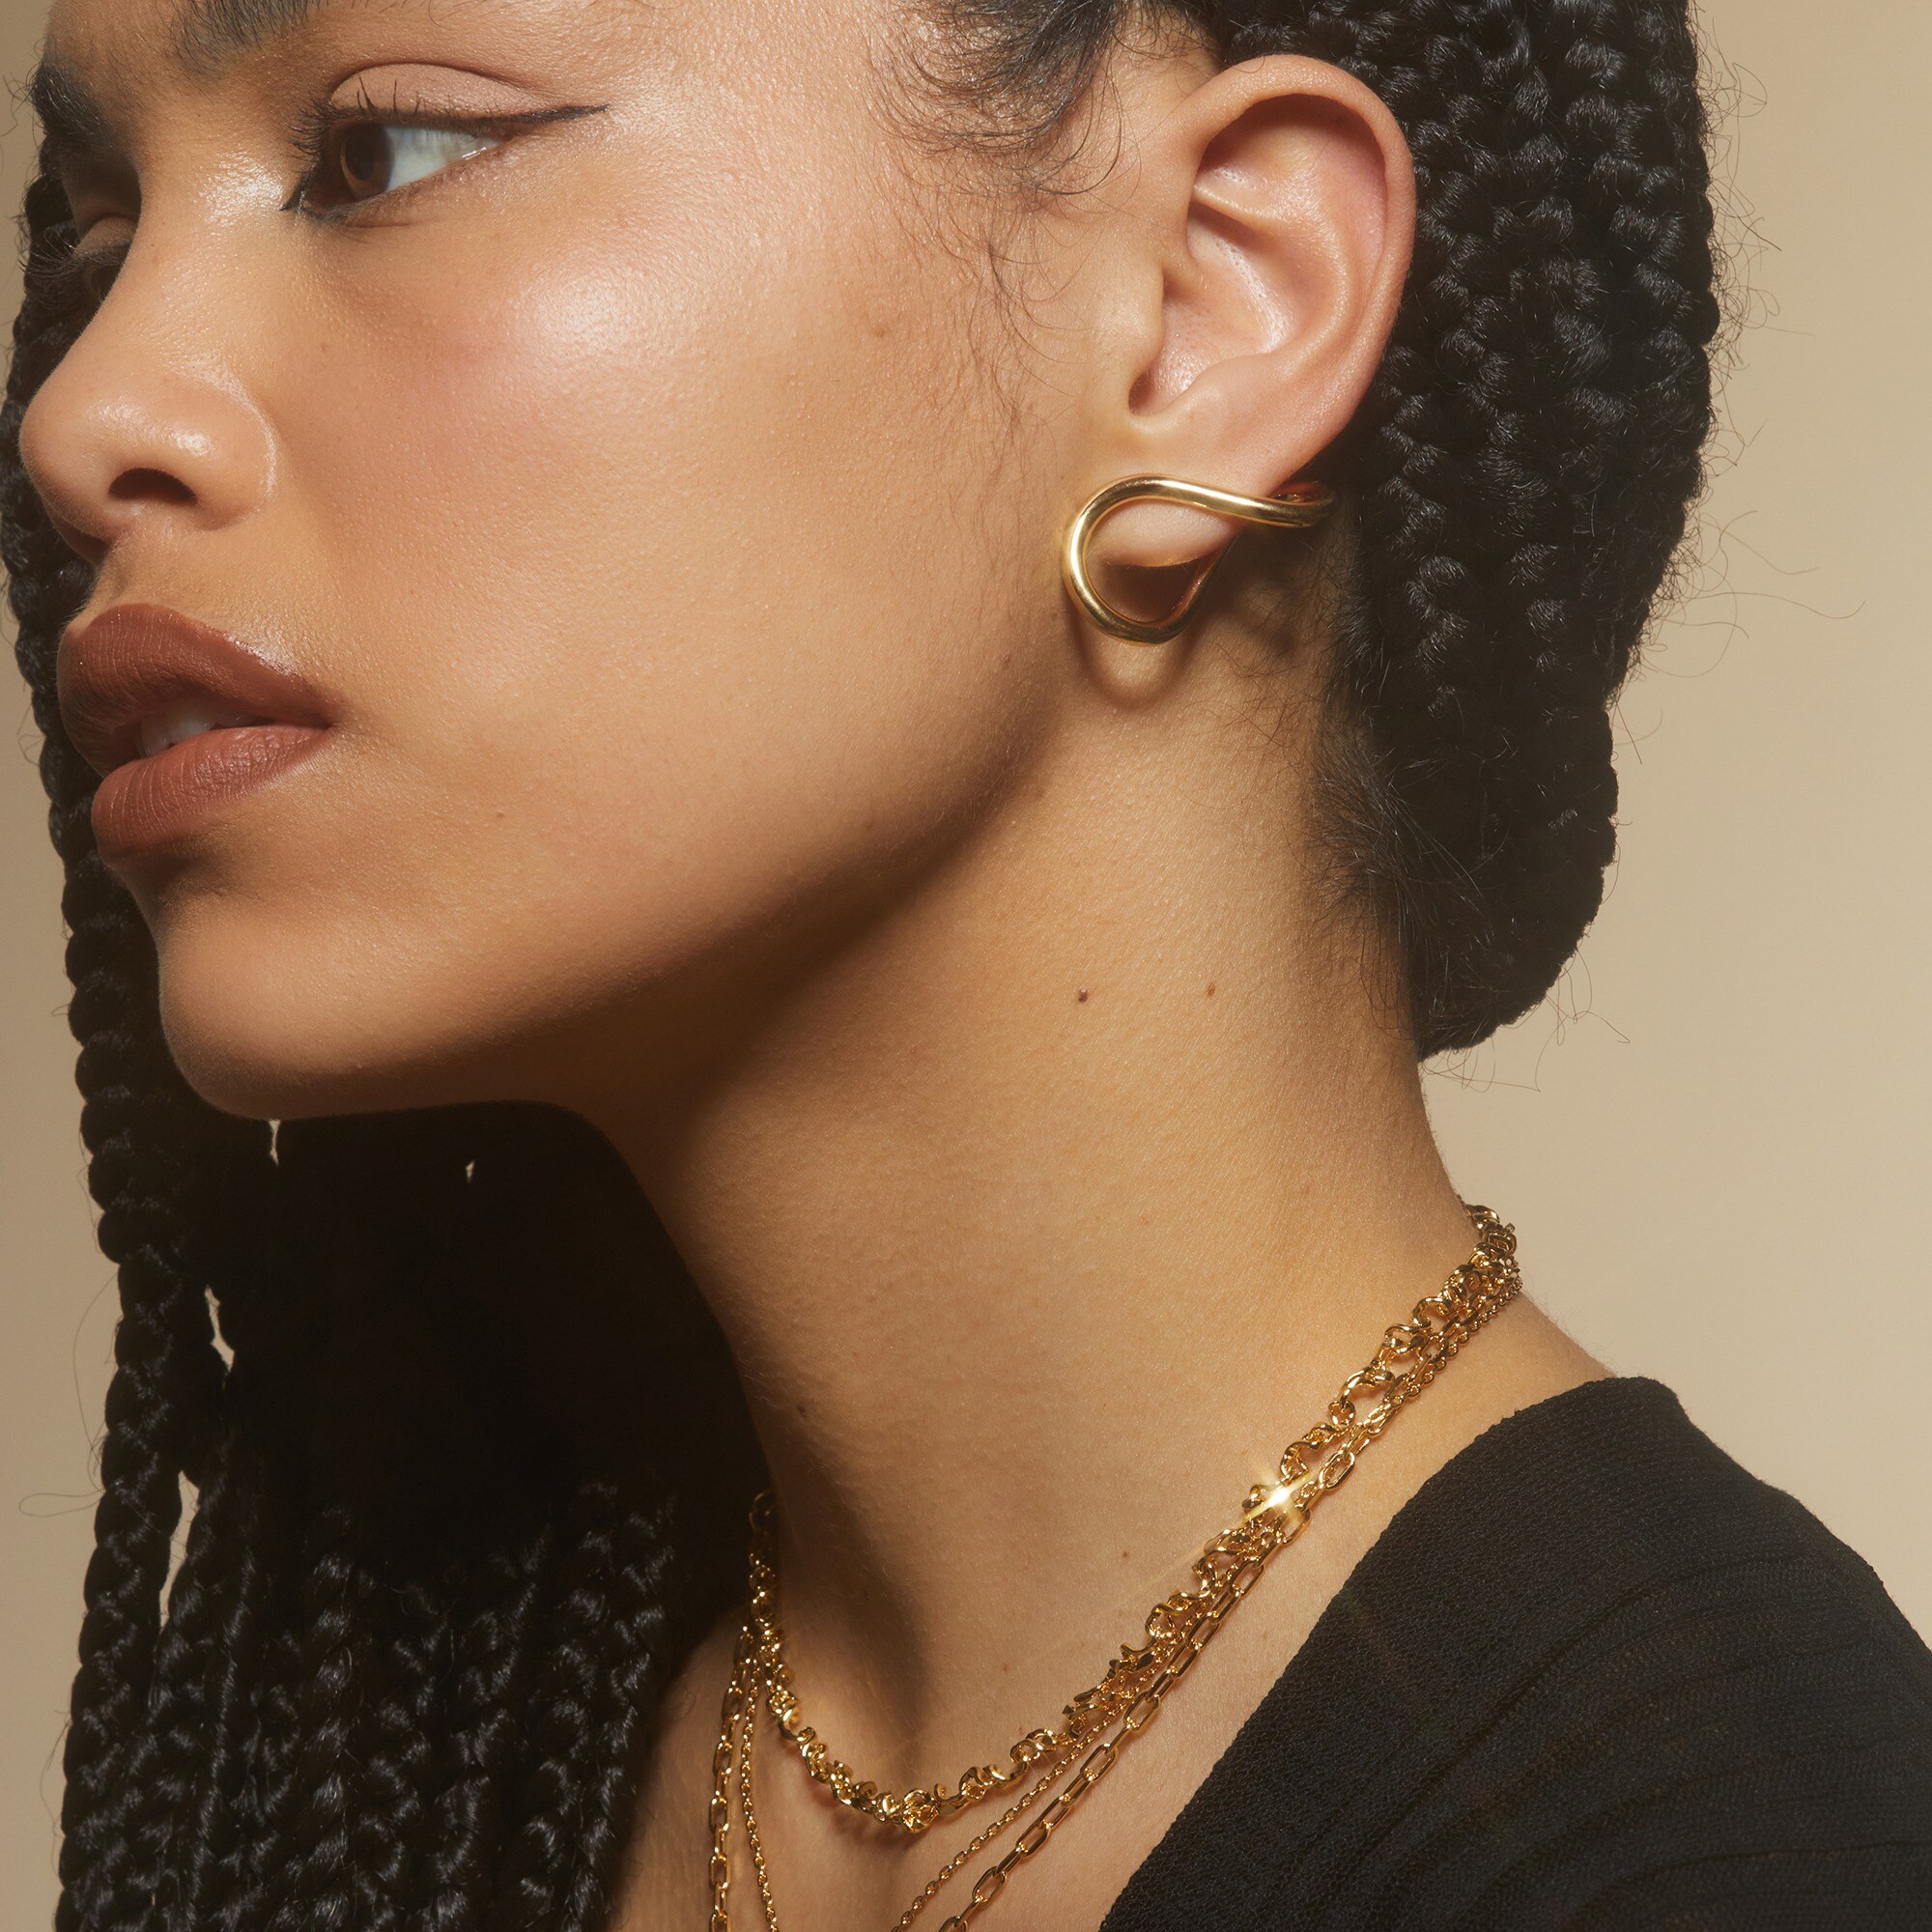  Lady Grey twisted lobe earrings in gold